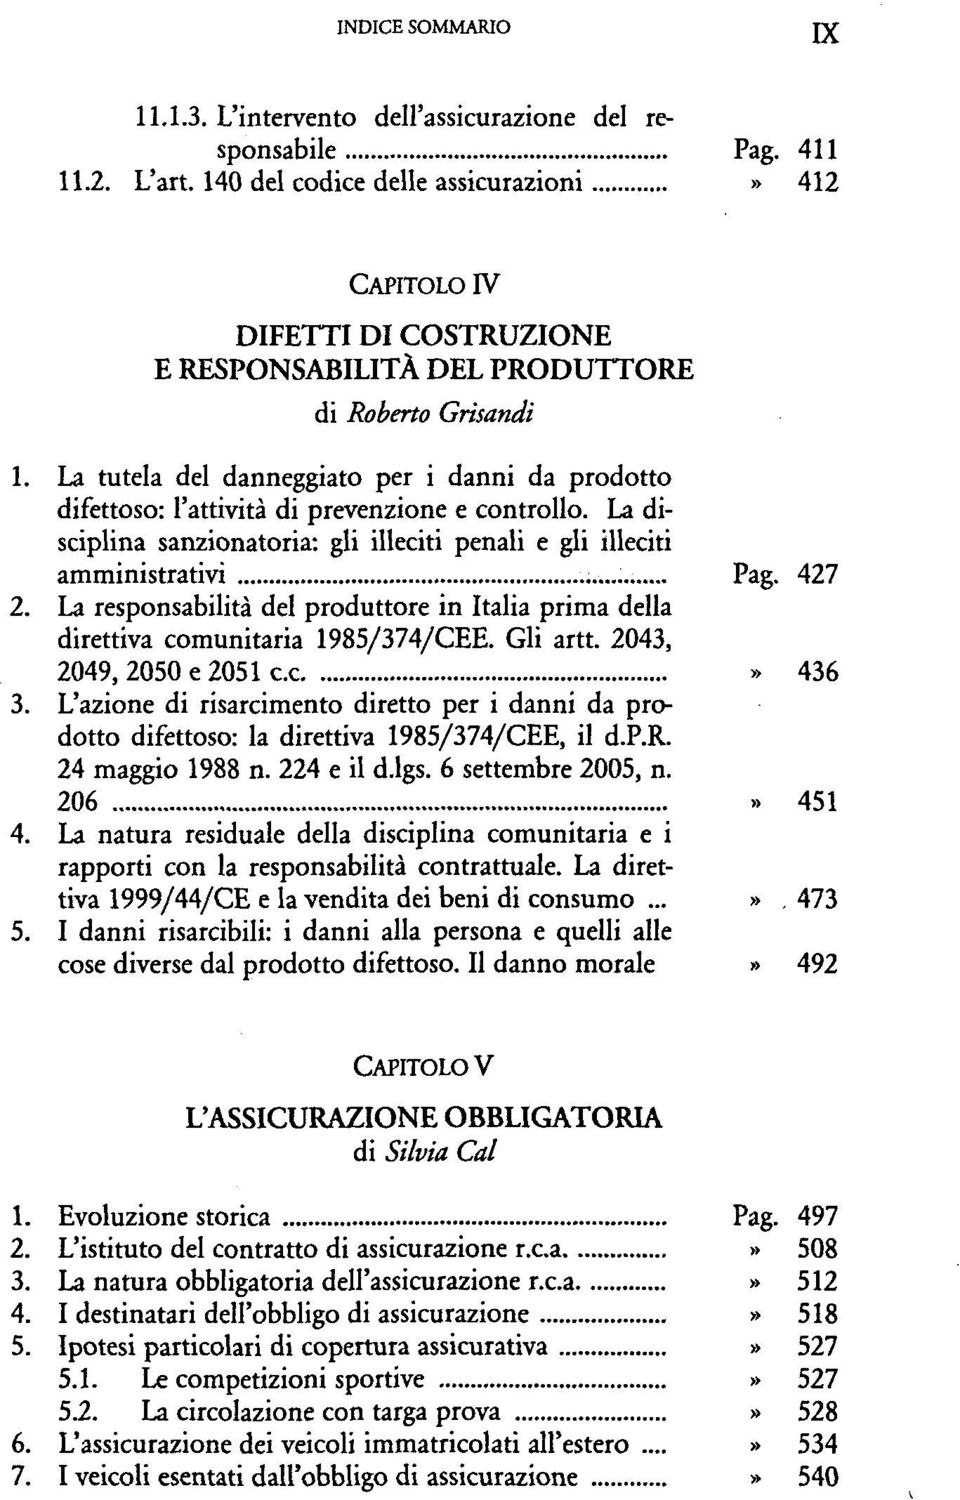 La responsabilitä del produttore in Italia prima della direttiva Gli artt. 2043, 2049, 2050 e 2051 c.c» 436 3.